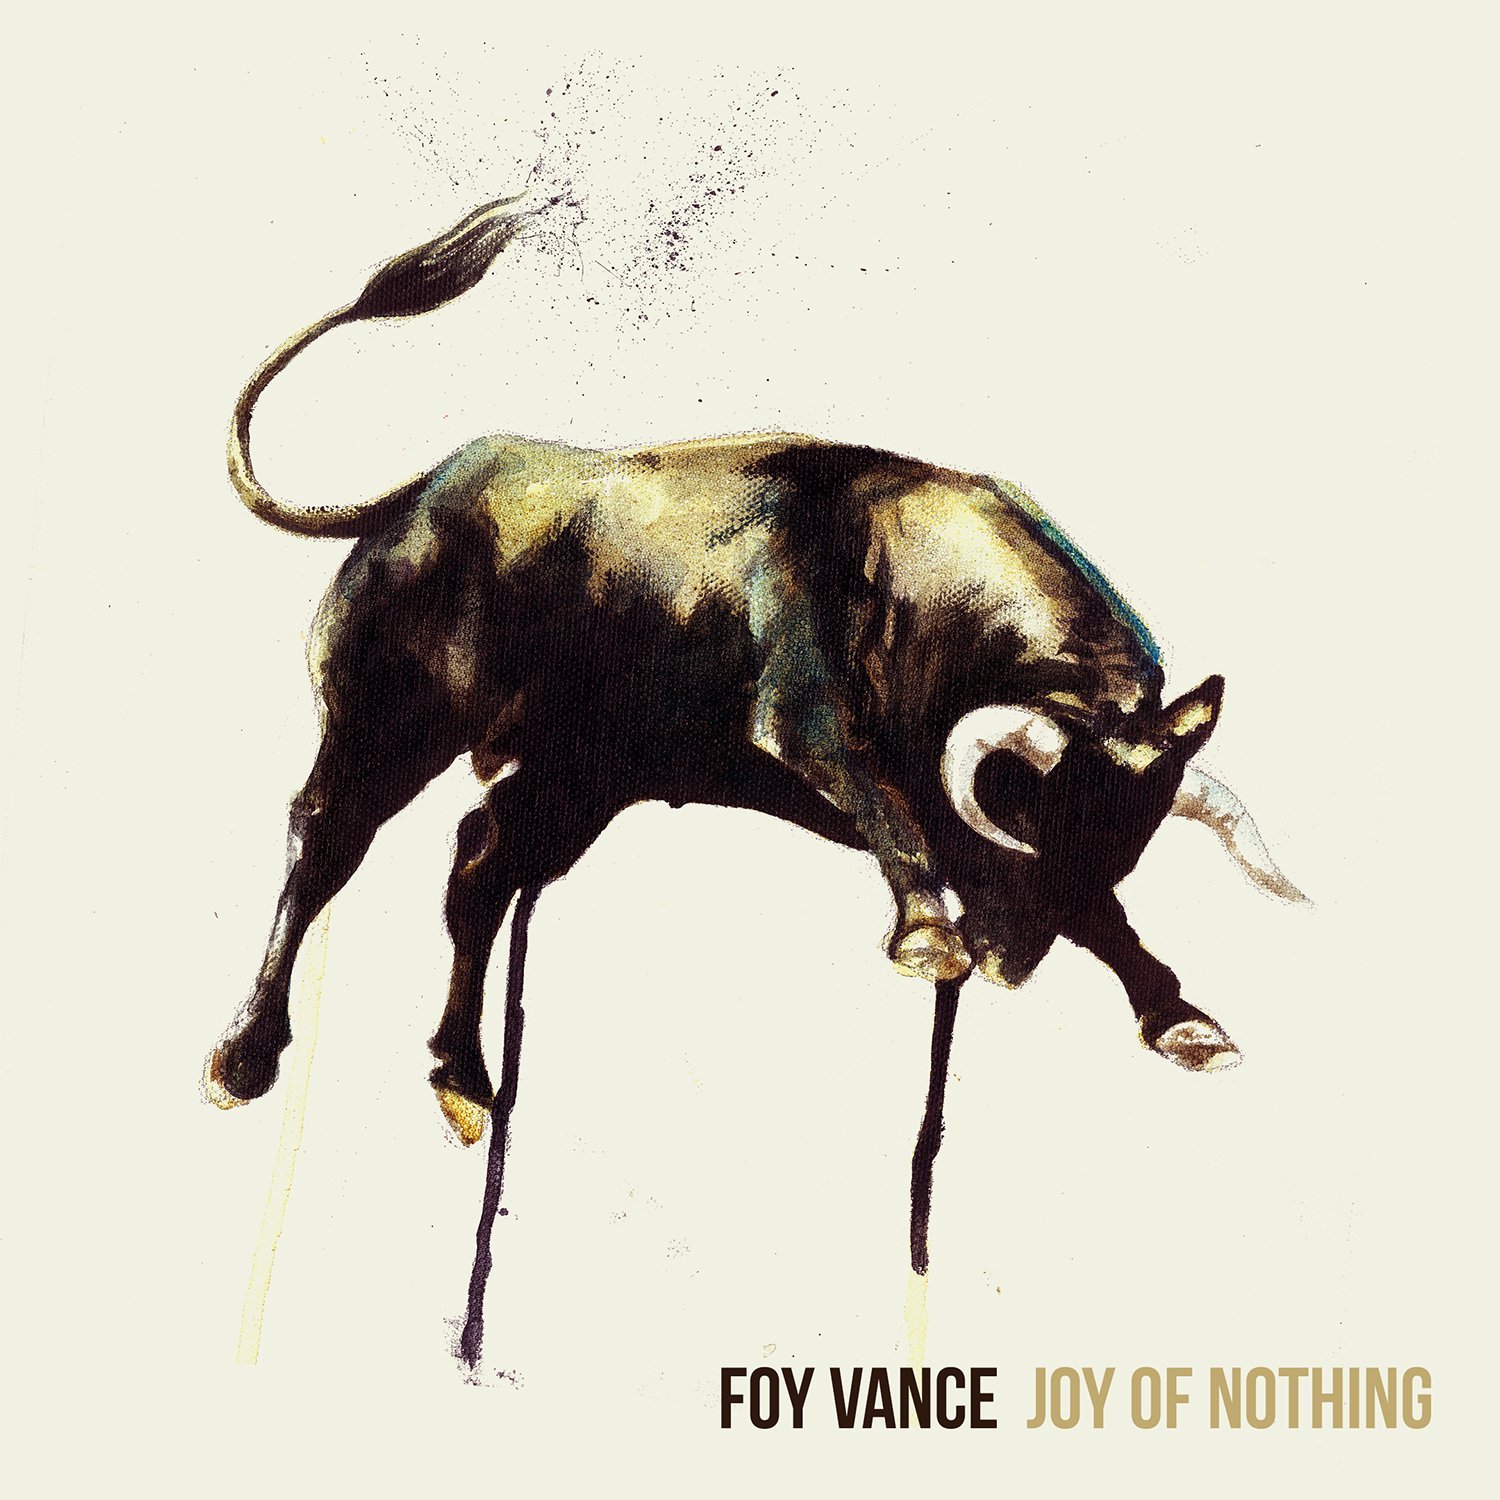 Foy Vance, Joy of Nothing